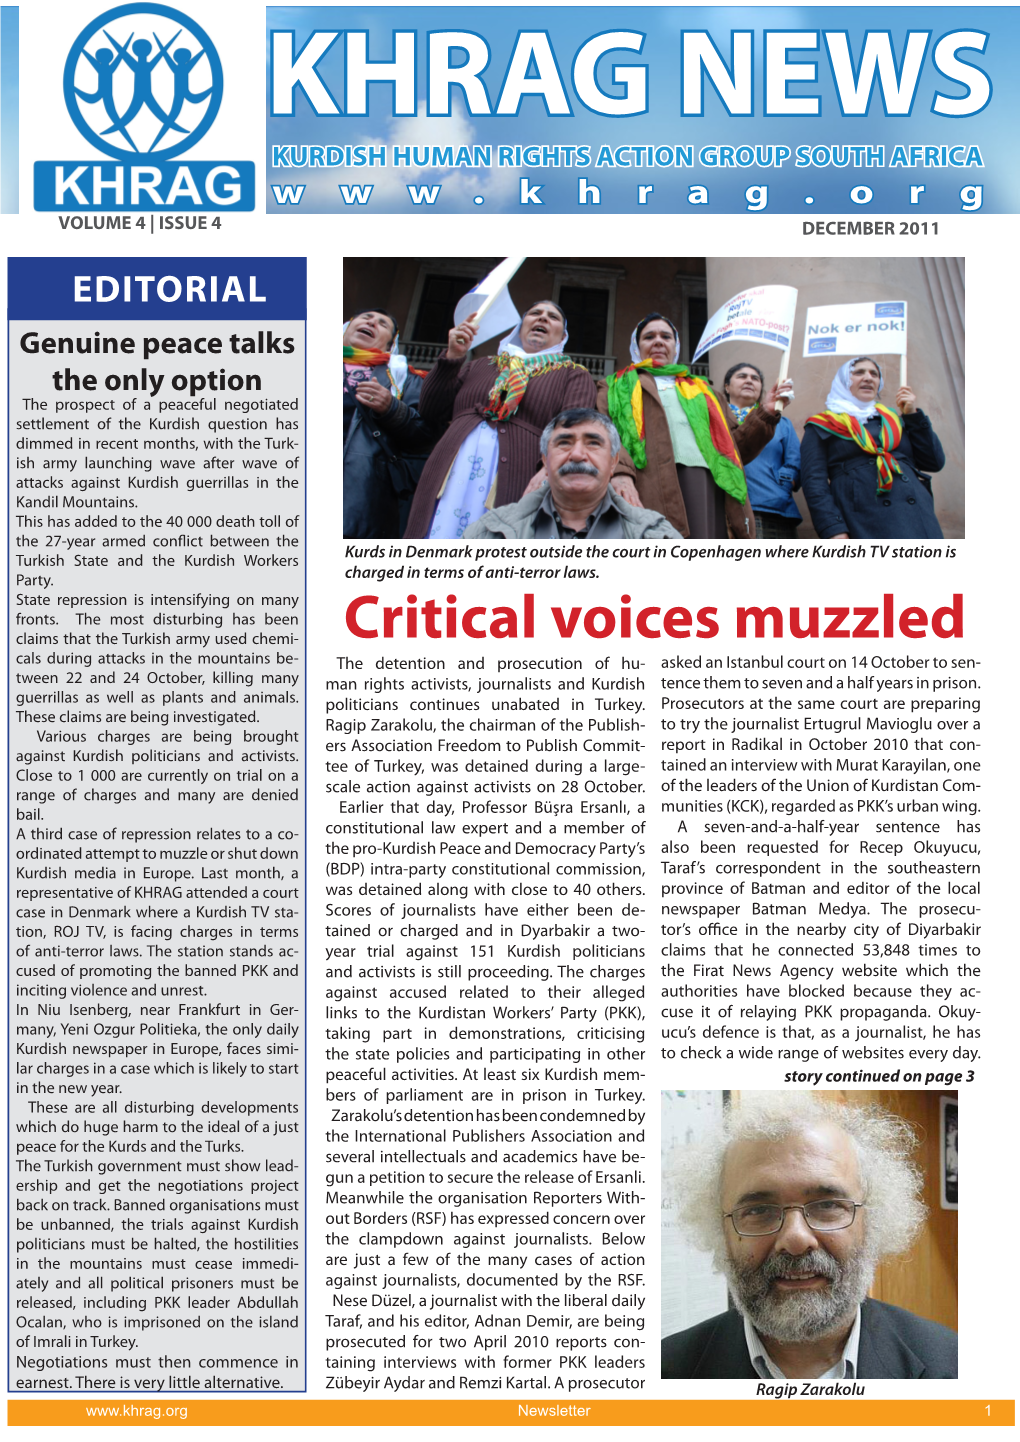 Critical Voices Muzzled